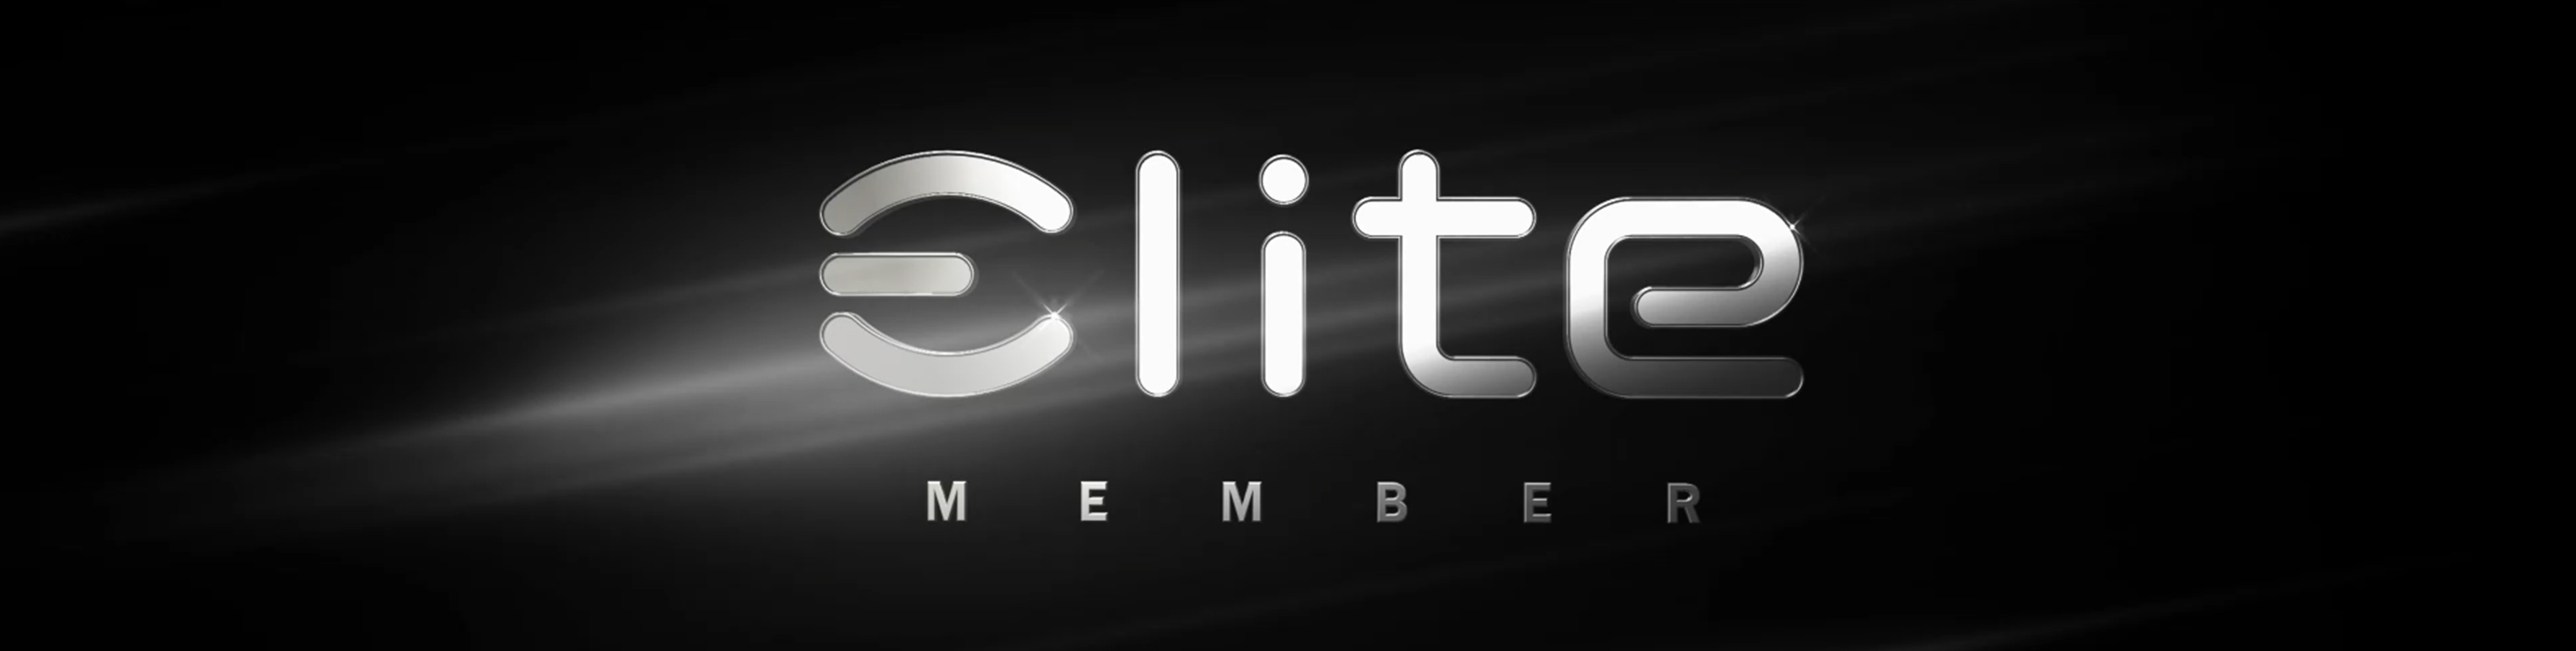 Elite member banner